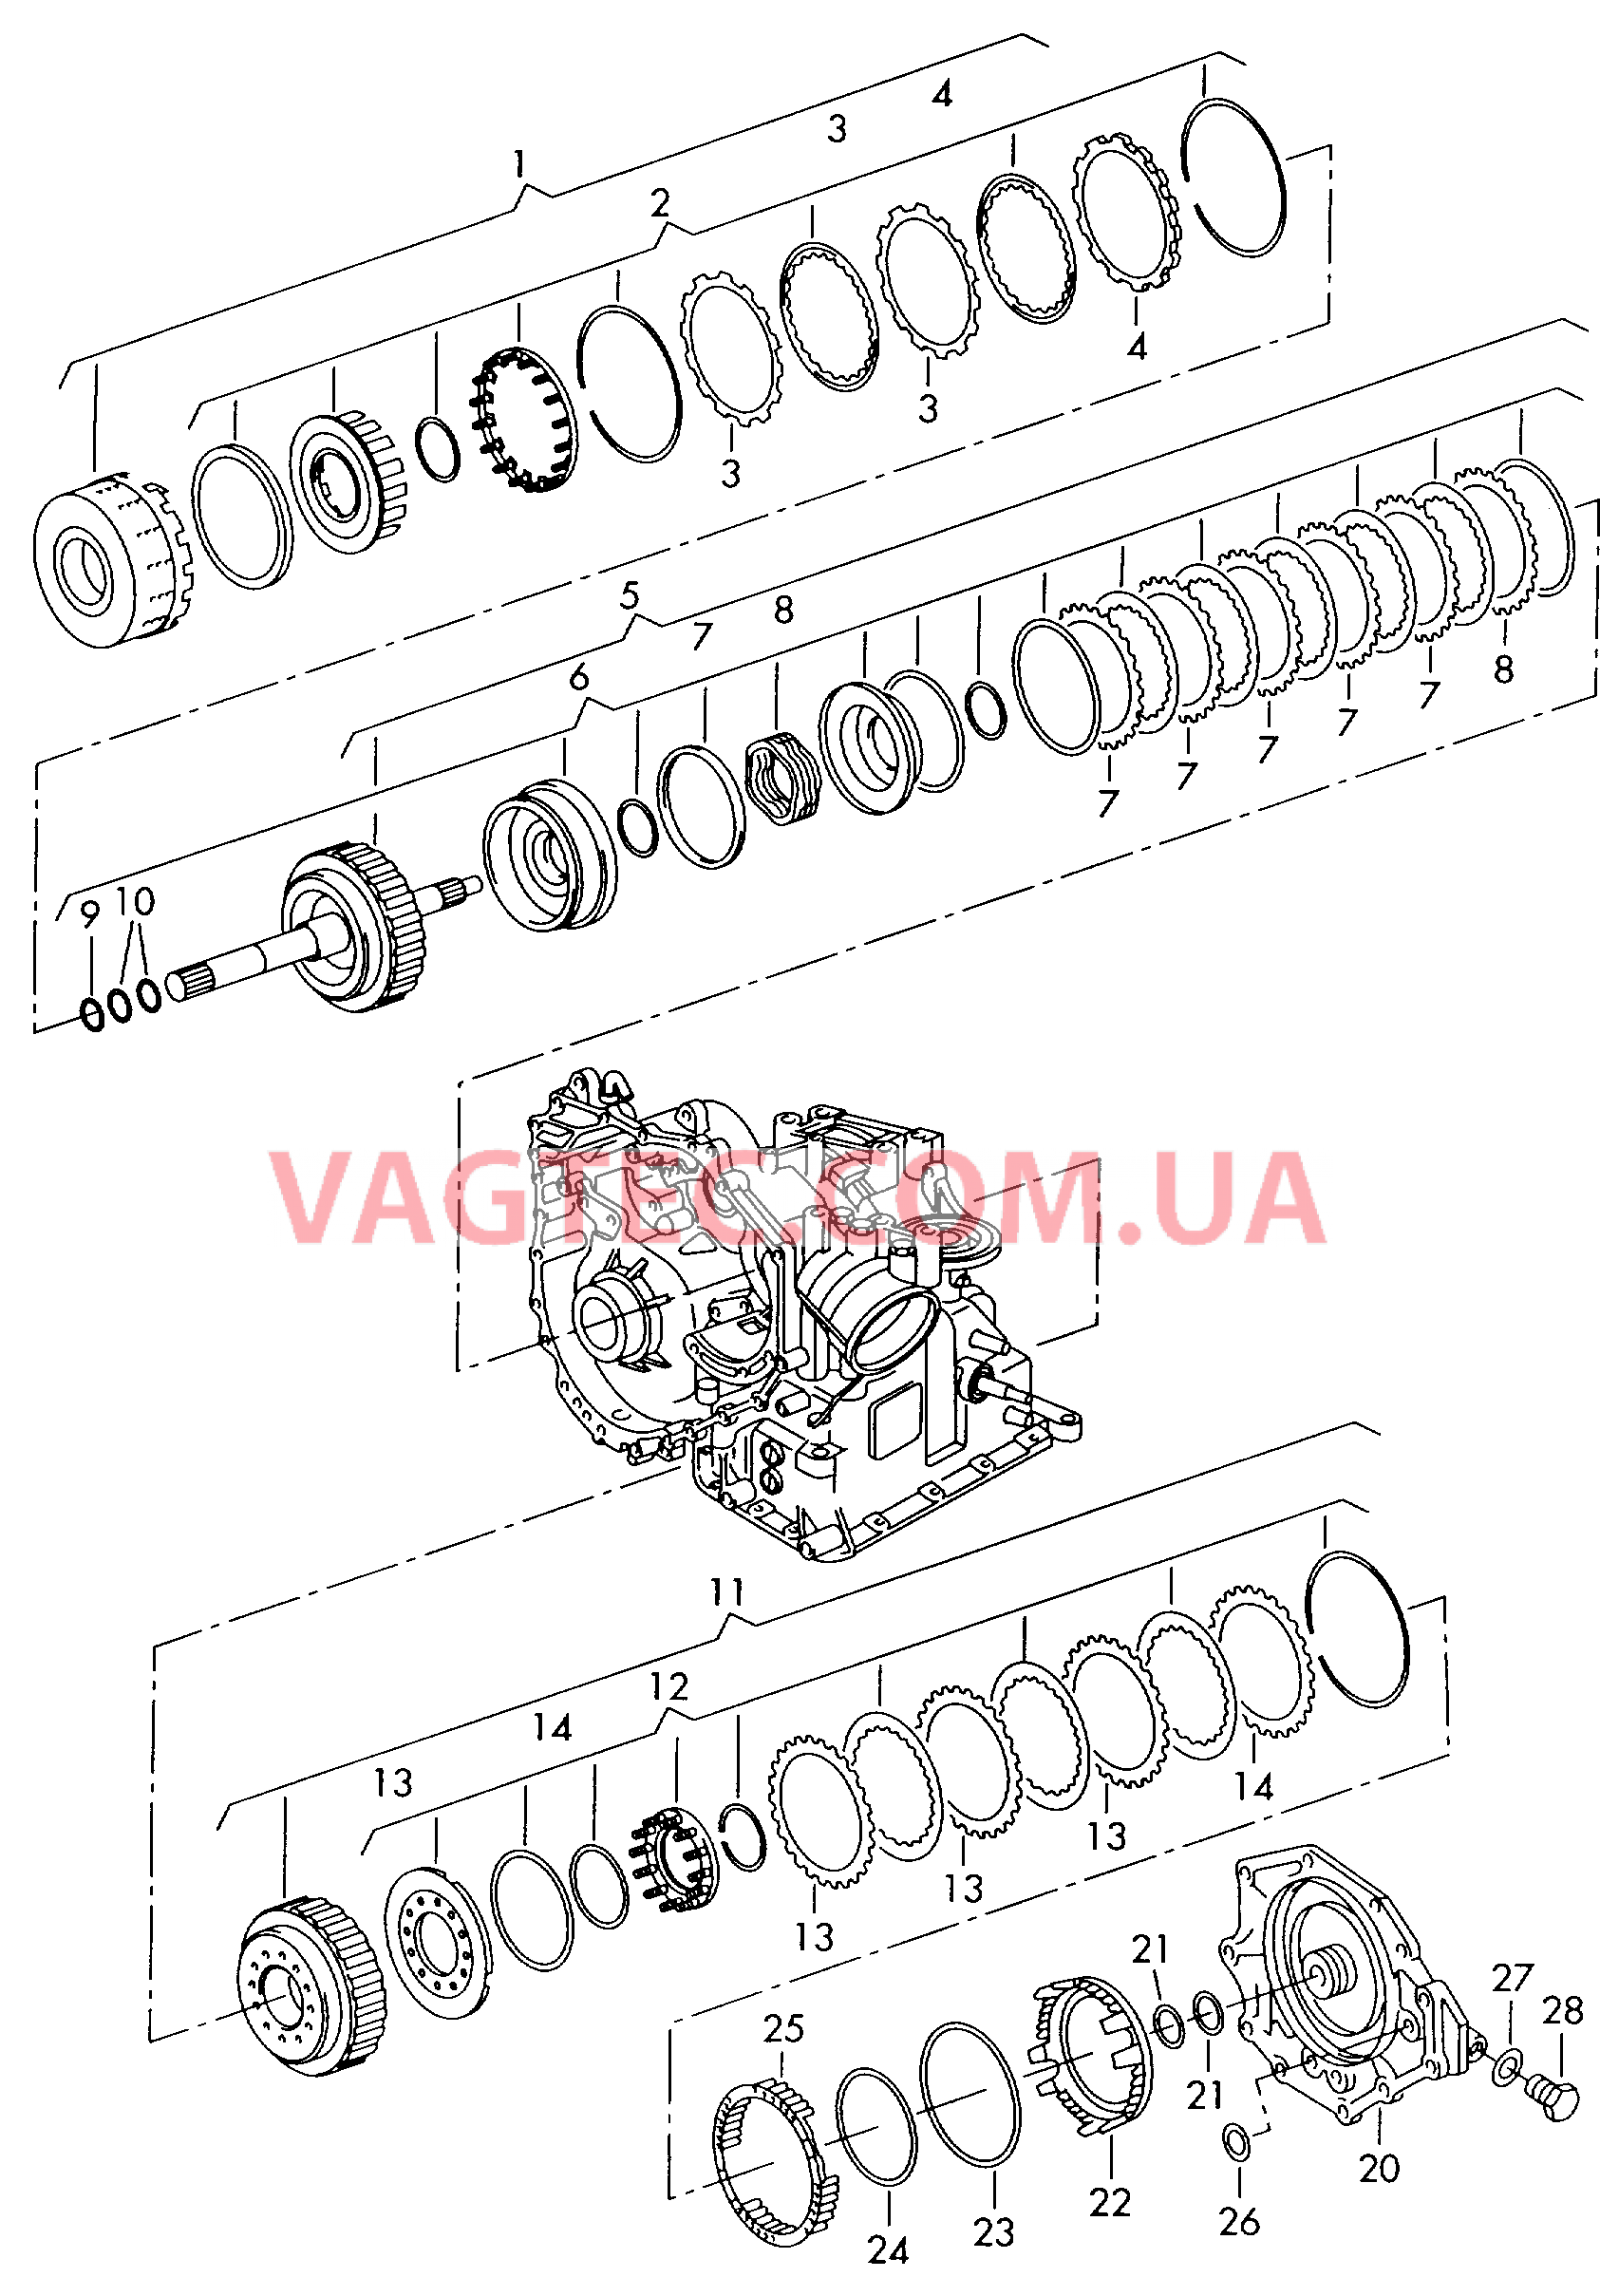 Муфта включения передач для движения вперед/заднего хода  для 4-ступенчатой АКП  для VOLKSWAGEN Polo 2000-1